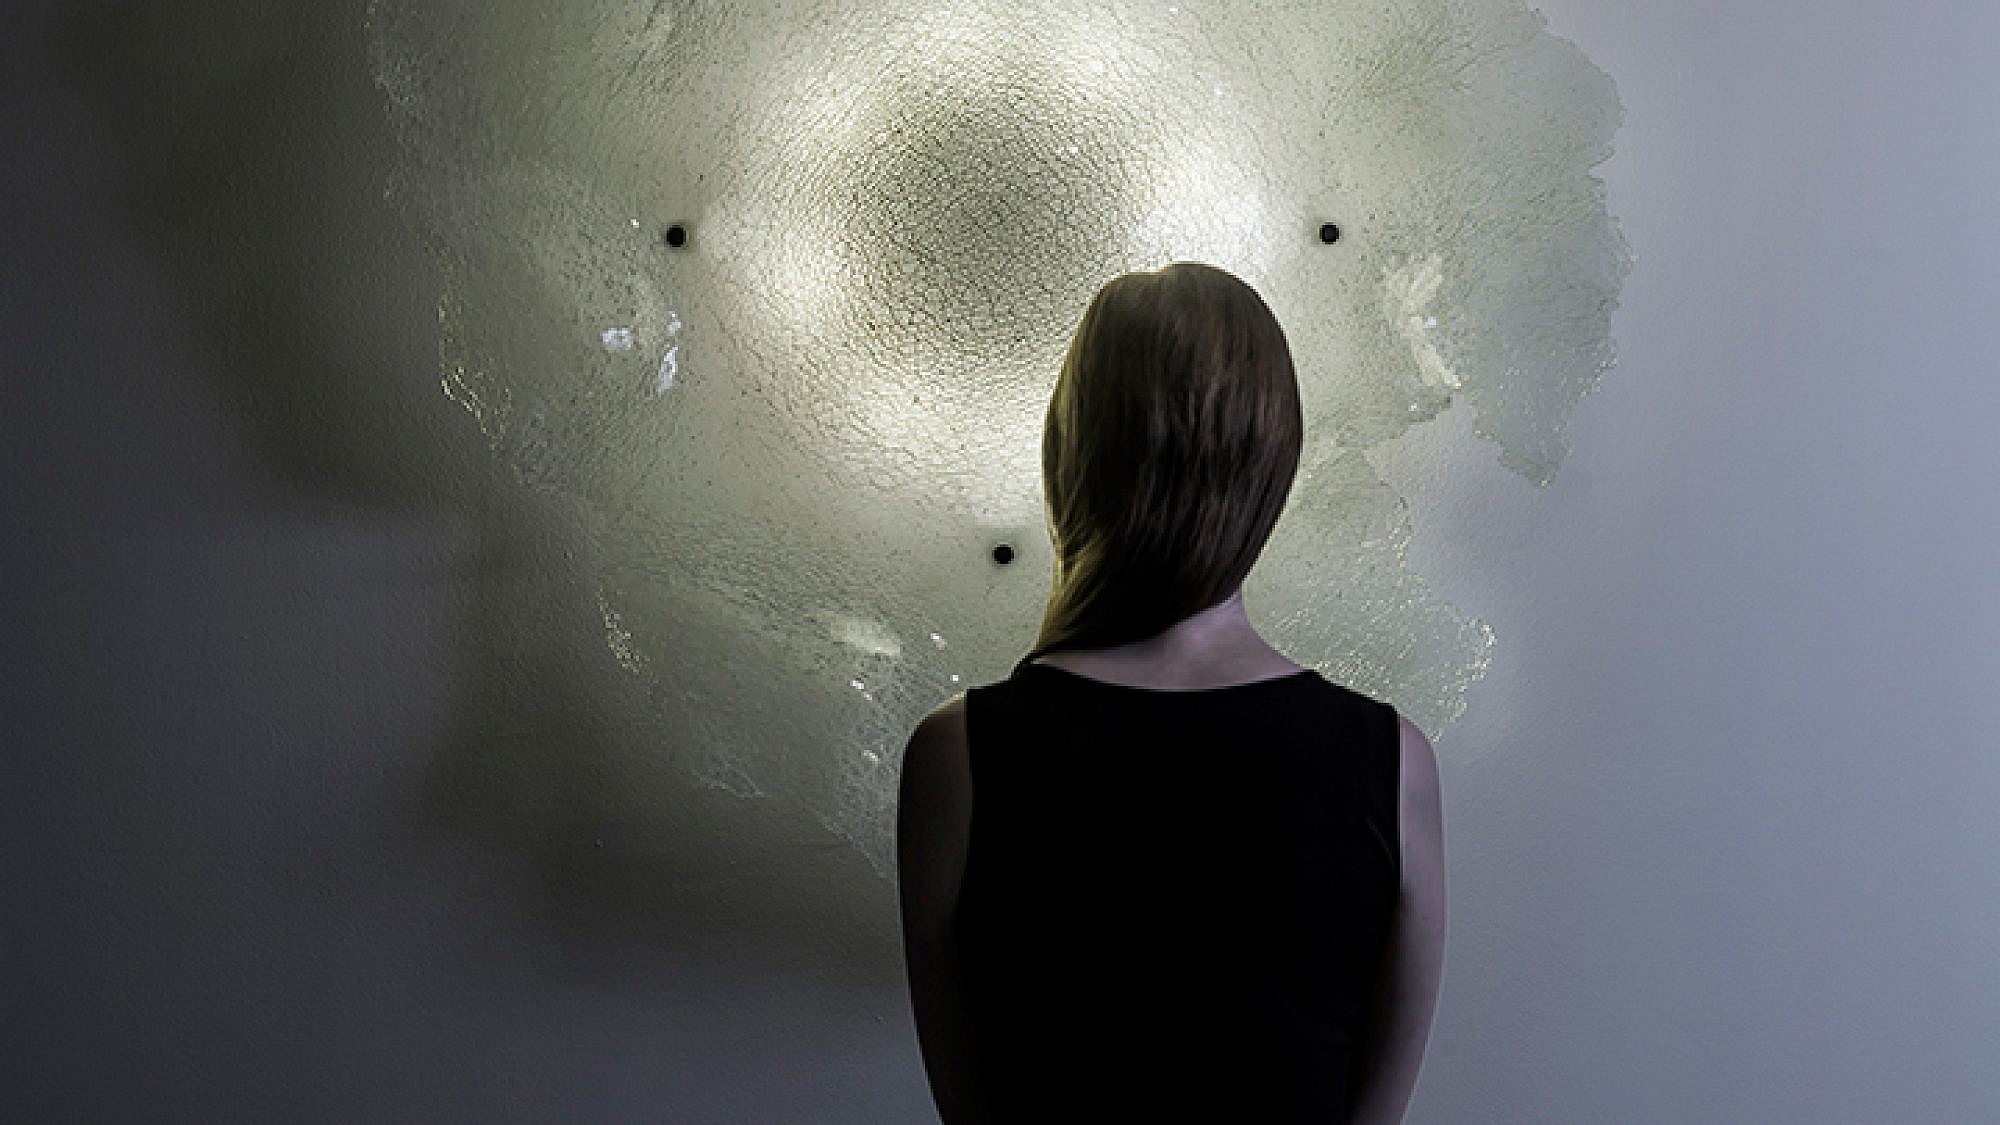 גוף תאורה "איו" בעיצוב אירה רוז'בסקי מתוך הסדרה "moons of Jupiter lightning collection" שהוצג ביריד "עיצוב טרי" | צילום: יח"צ